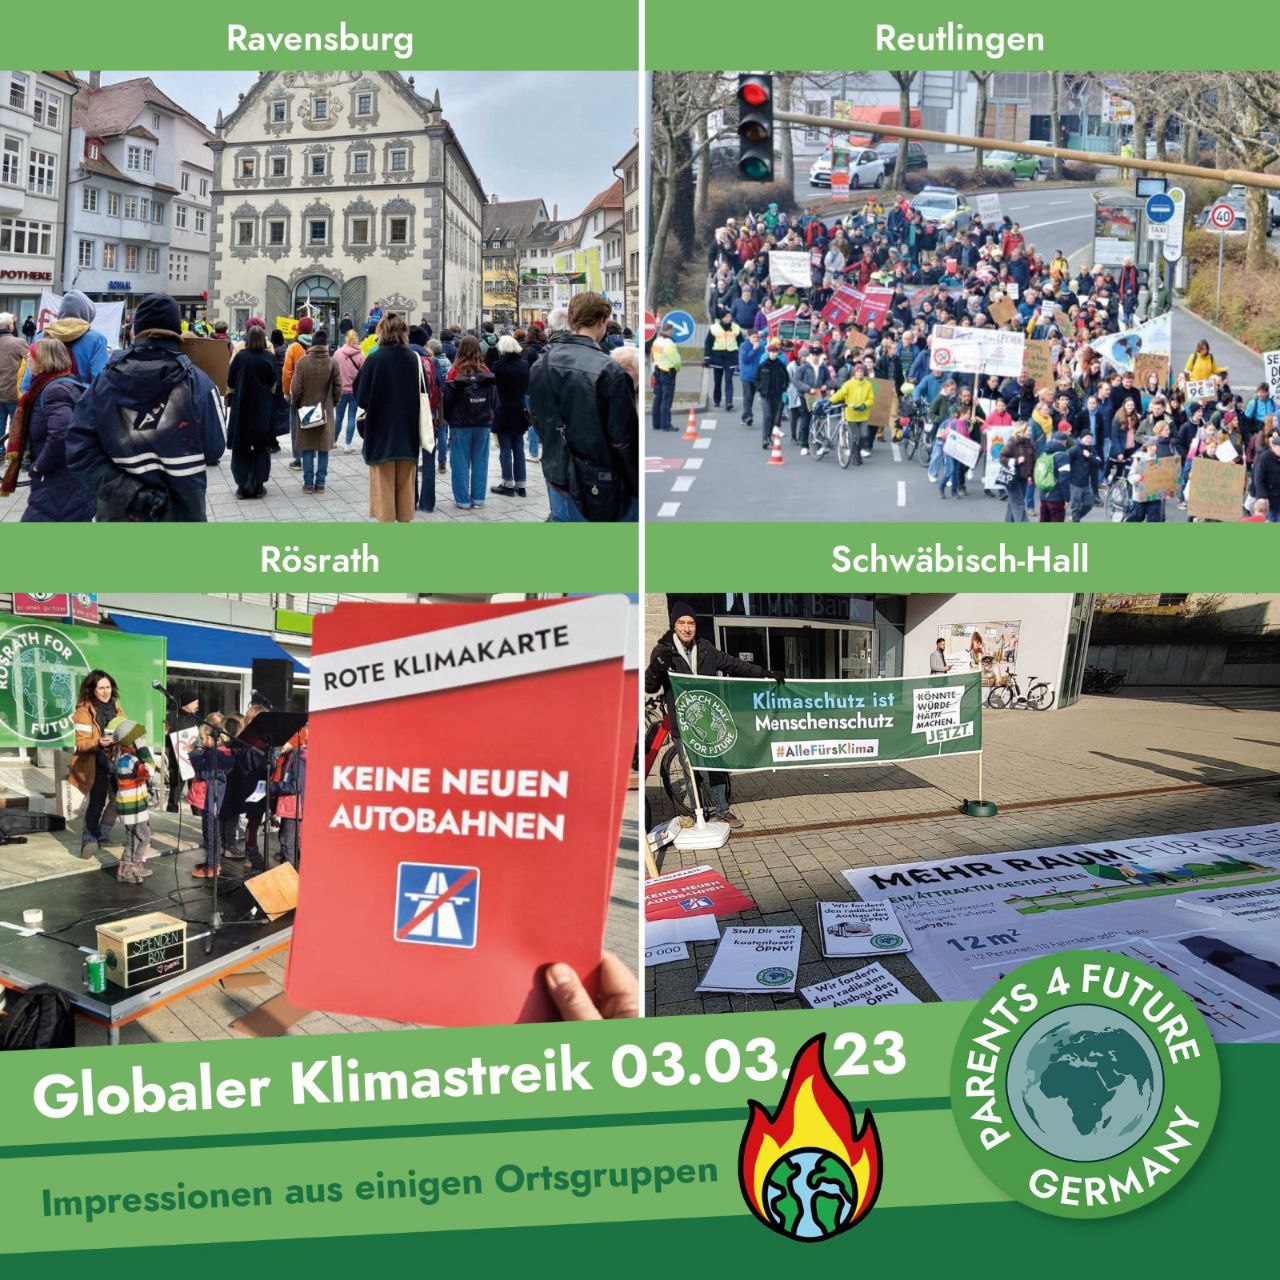 Impressionen vom Klimastreik am 3. März 2023 Ravensburg, Reutlingen, Rösrath, Schwäbisch-Hall